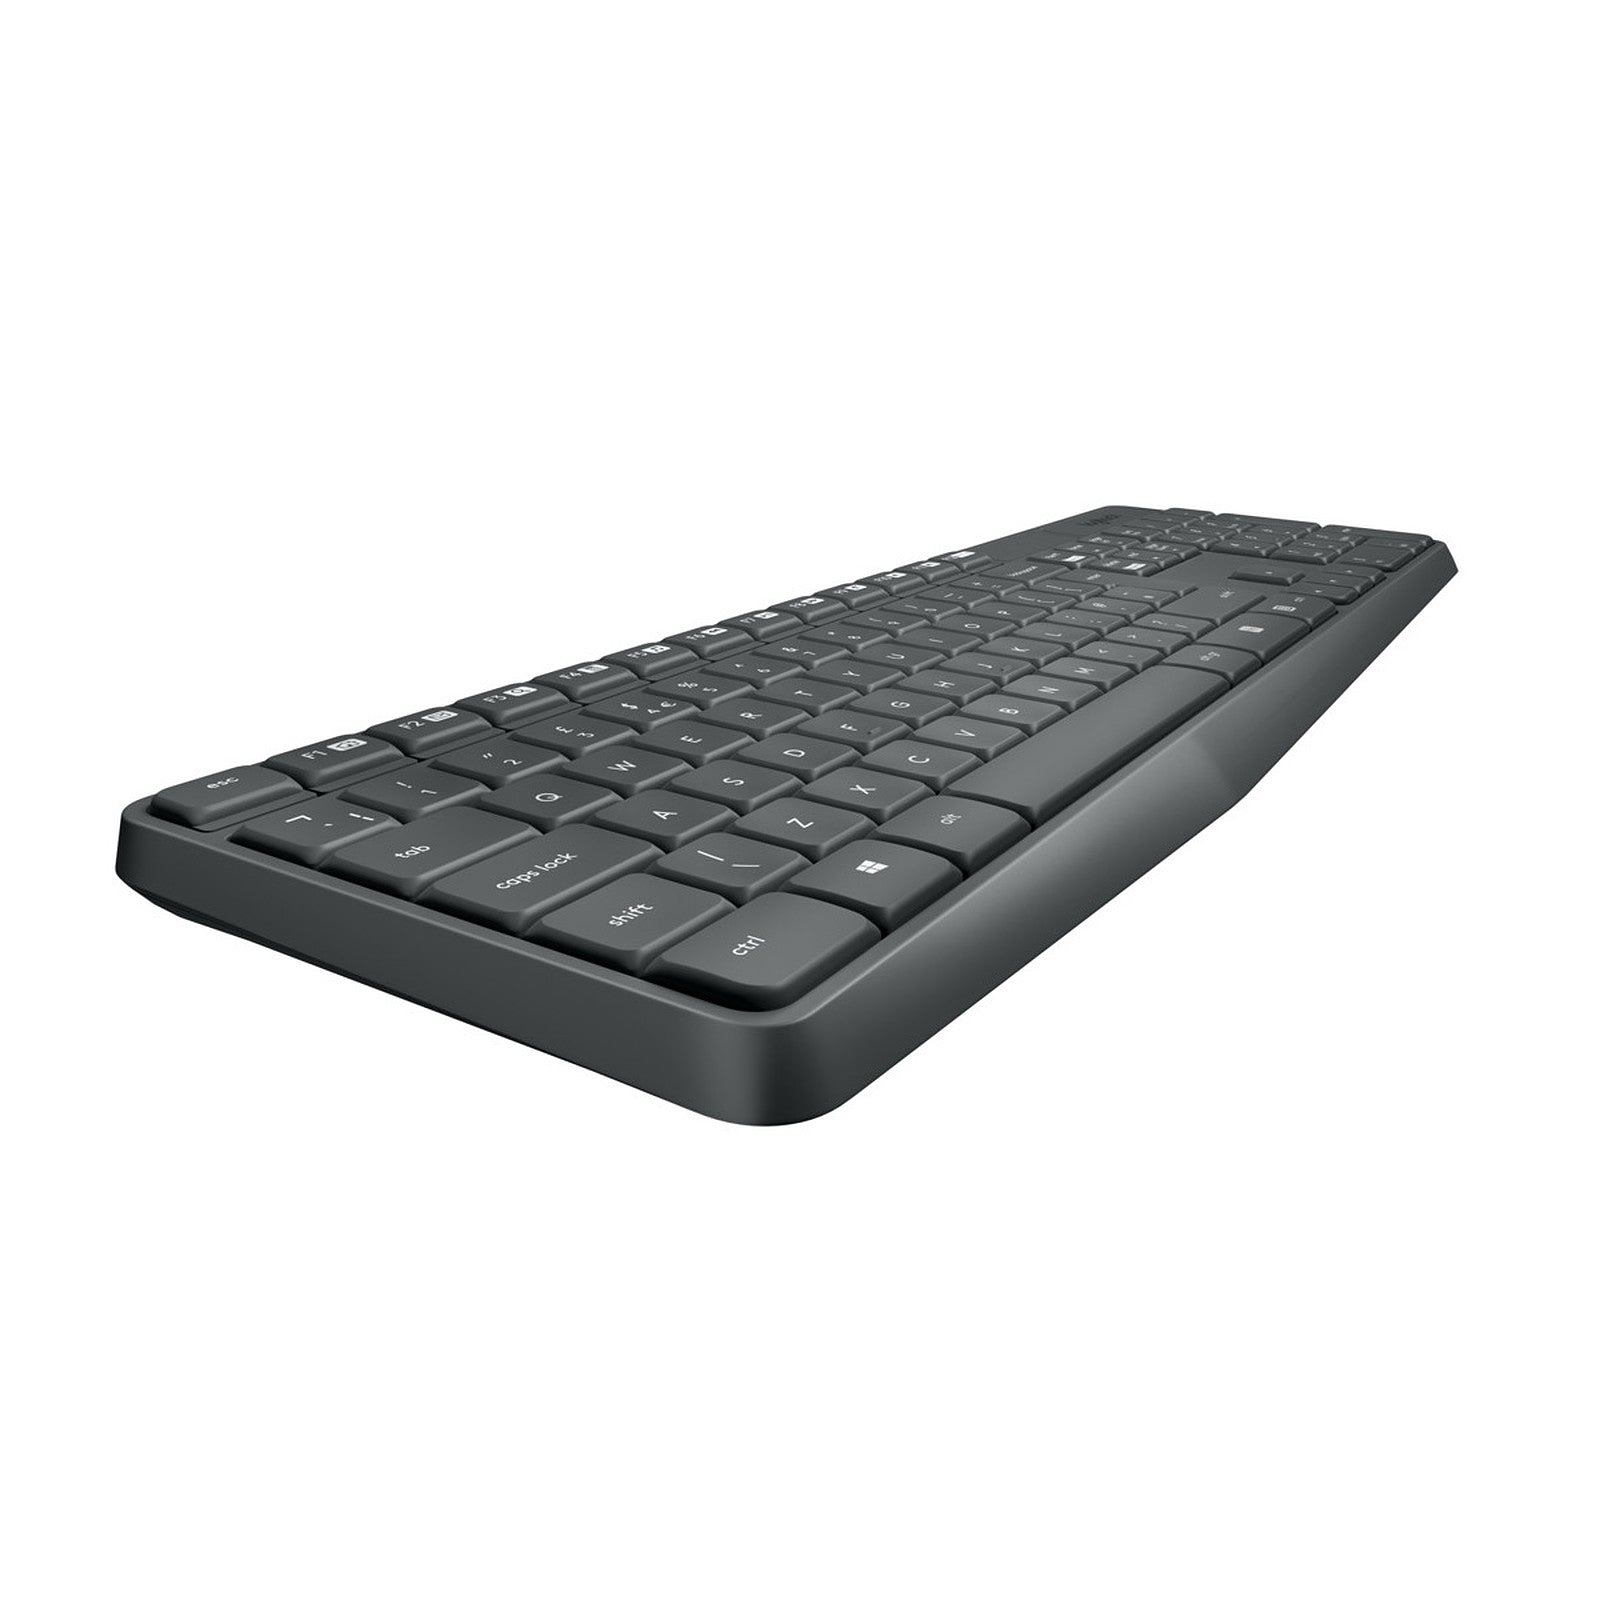 Logitech - Pack clavier / souris sans fil - MK235